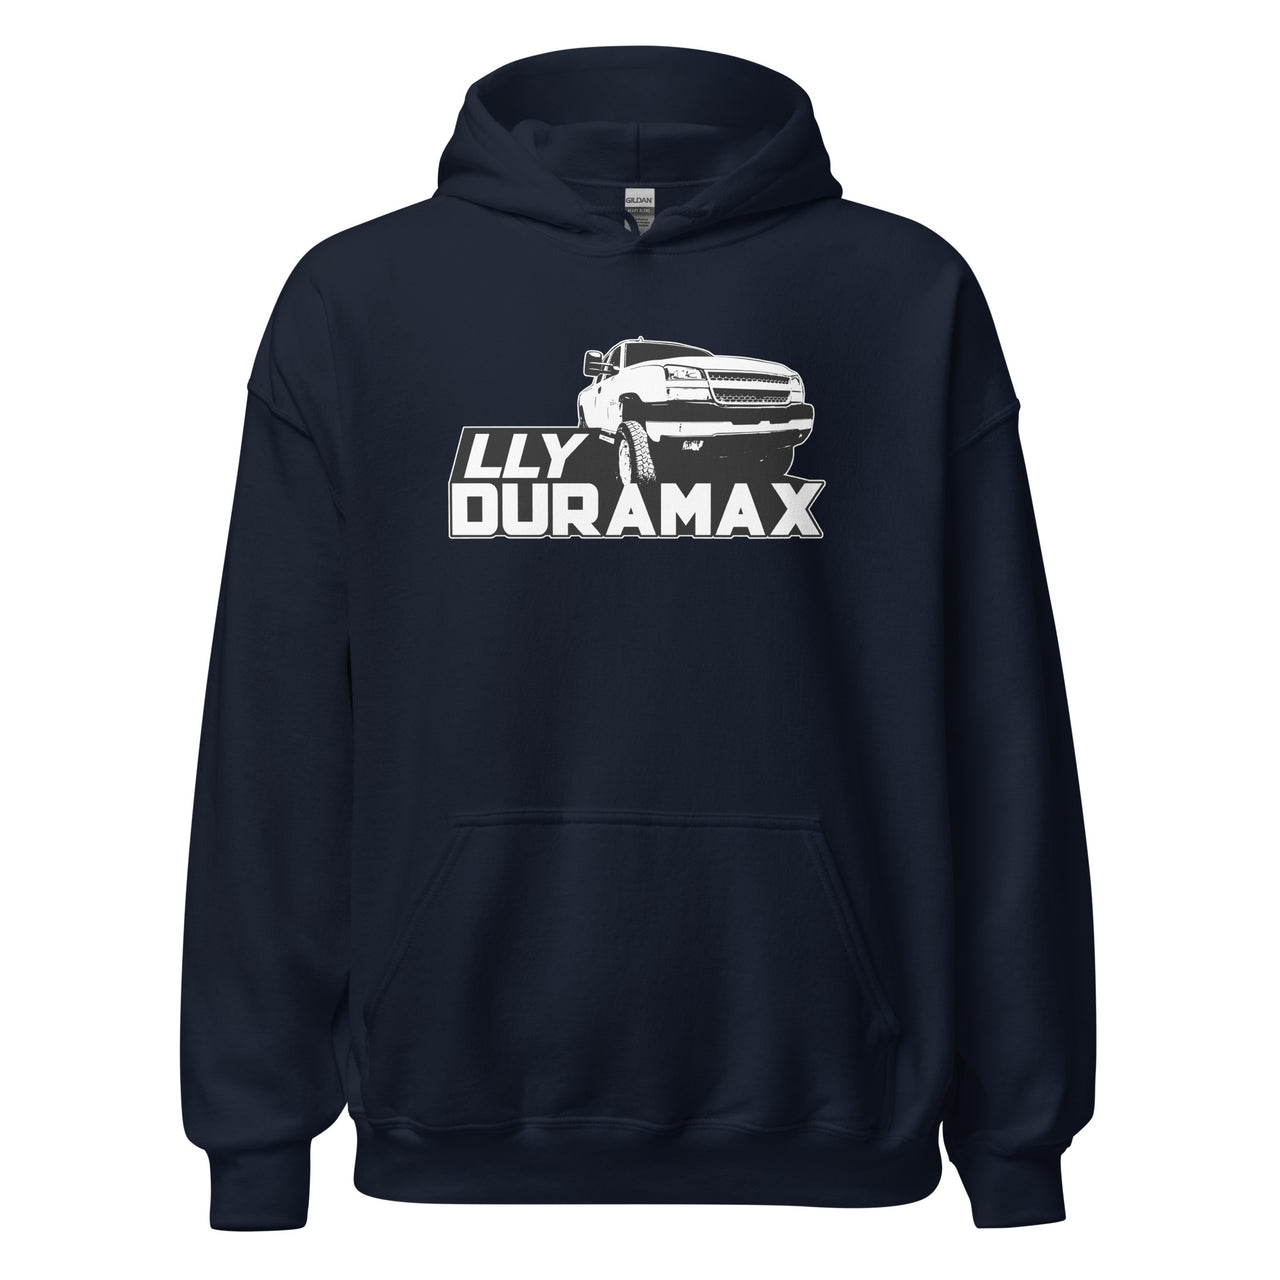 LLY Duramax Truck Hoodie Sweatshirt in navy